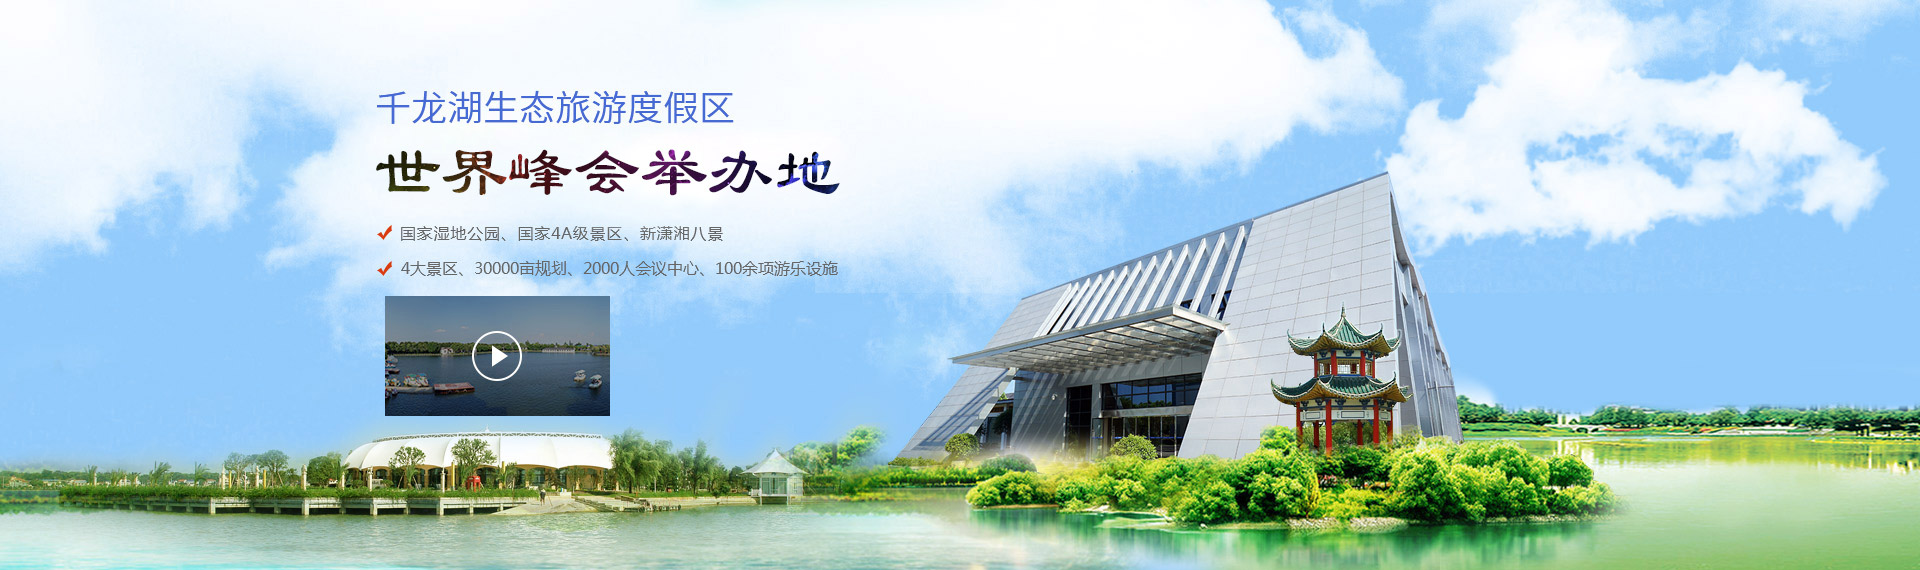 千龍湖生態旅游度假區——世界峰會舉辦地